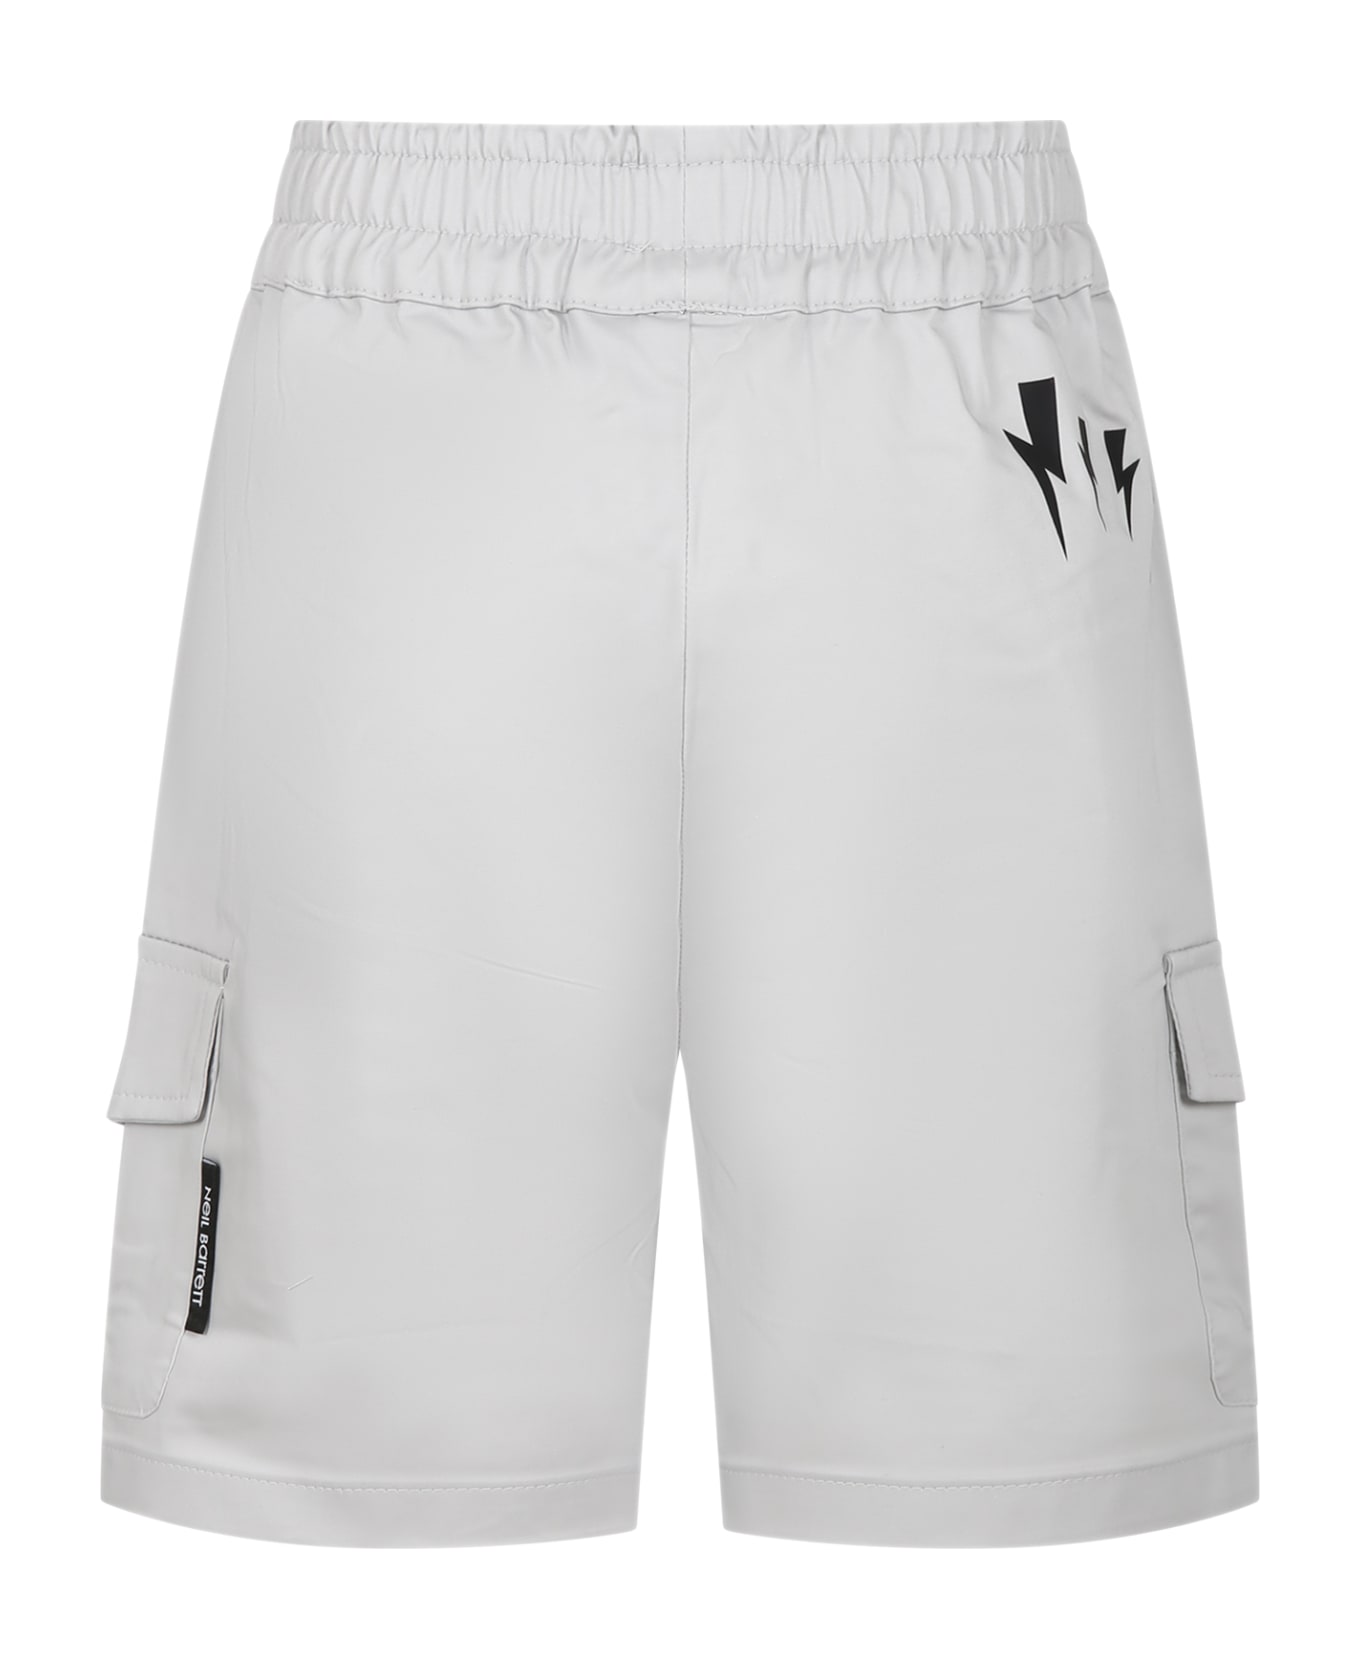 Neil Barrett Grey Shorts For Boy - Grey